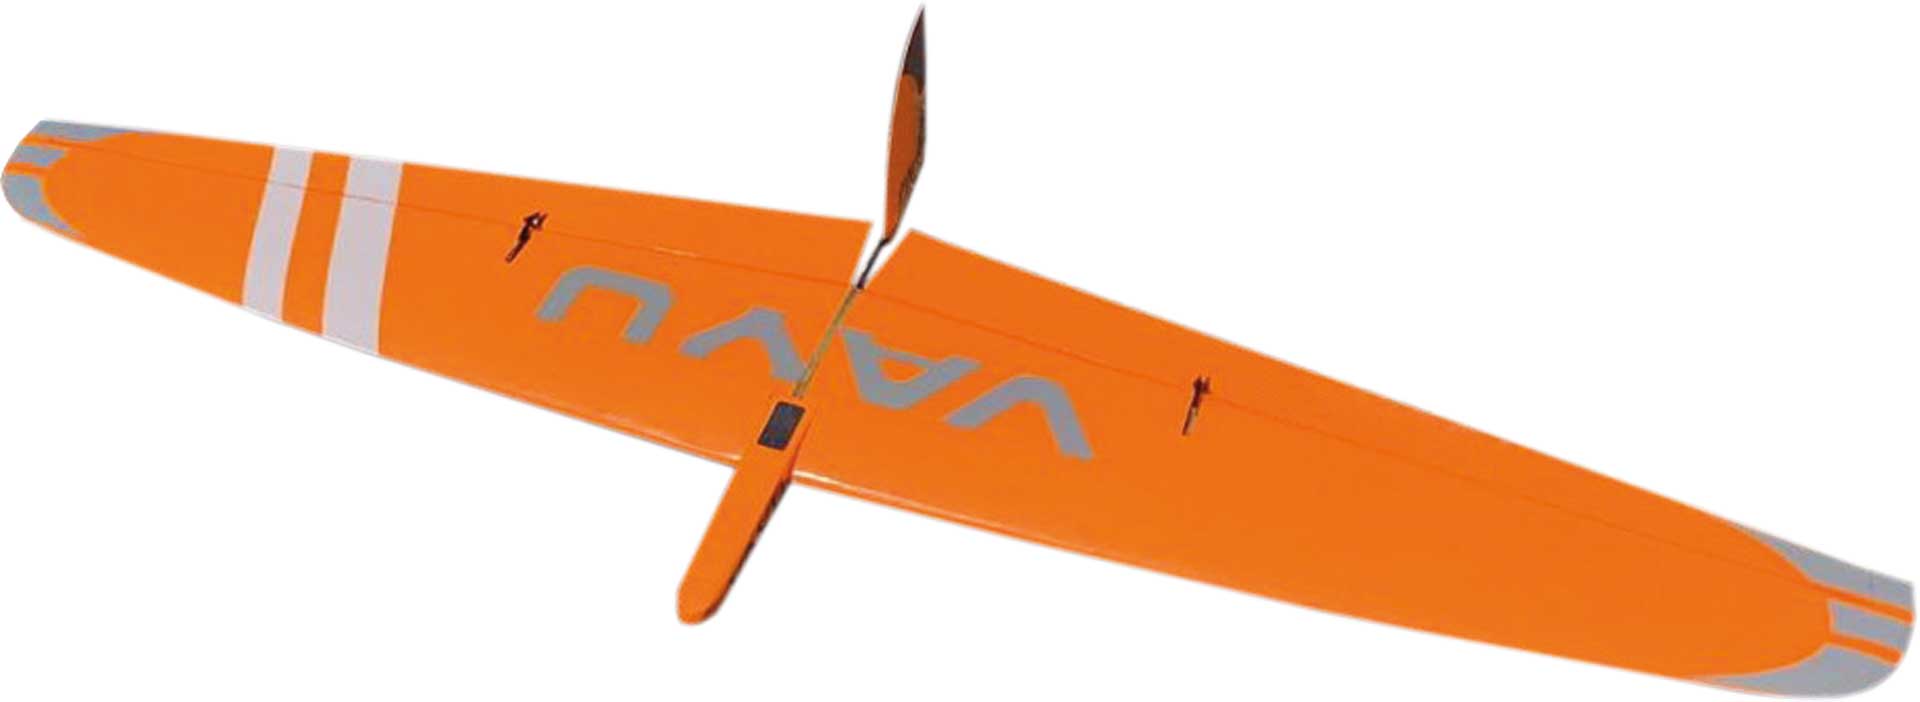 Robbe Modellsport VAYU Modèle réduit d'aile en bois construction innovante en contreplaqué